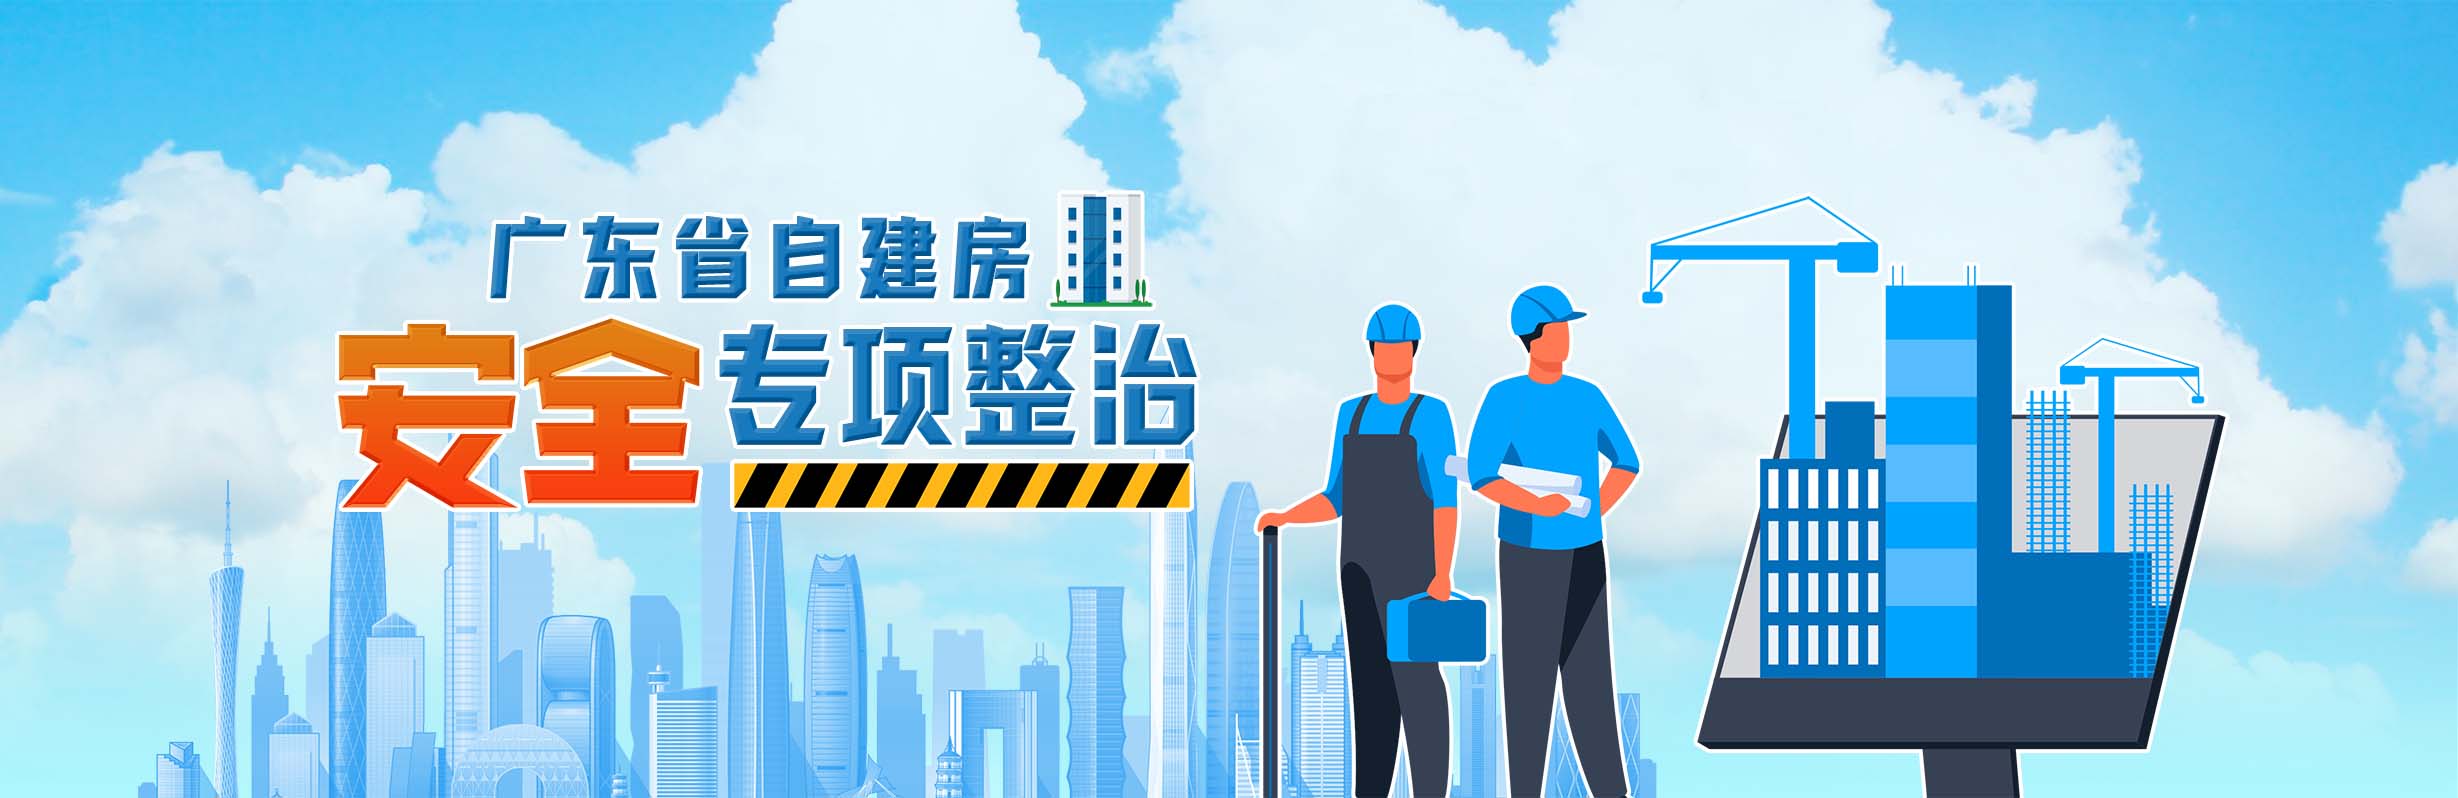 广东省自建房安全专项整治